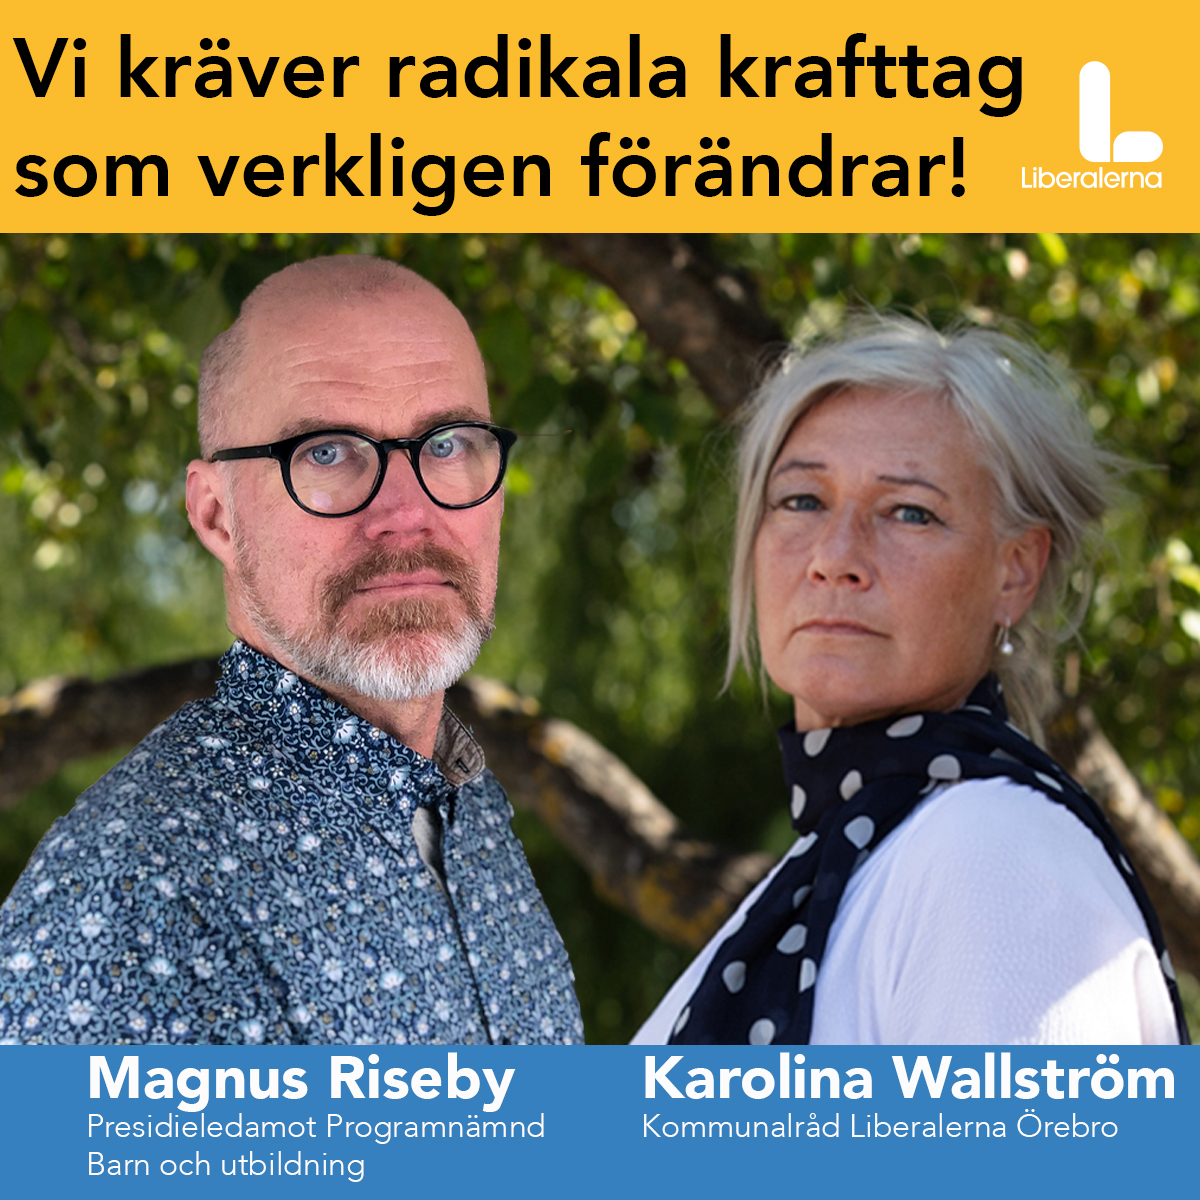 Magnus Riseby Liberalerna Örebro Presidieledamot programnämnd Barn och utbildning & Karolina Wallström (L) Kommunalråd